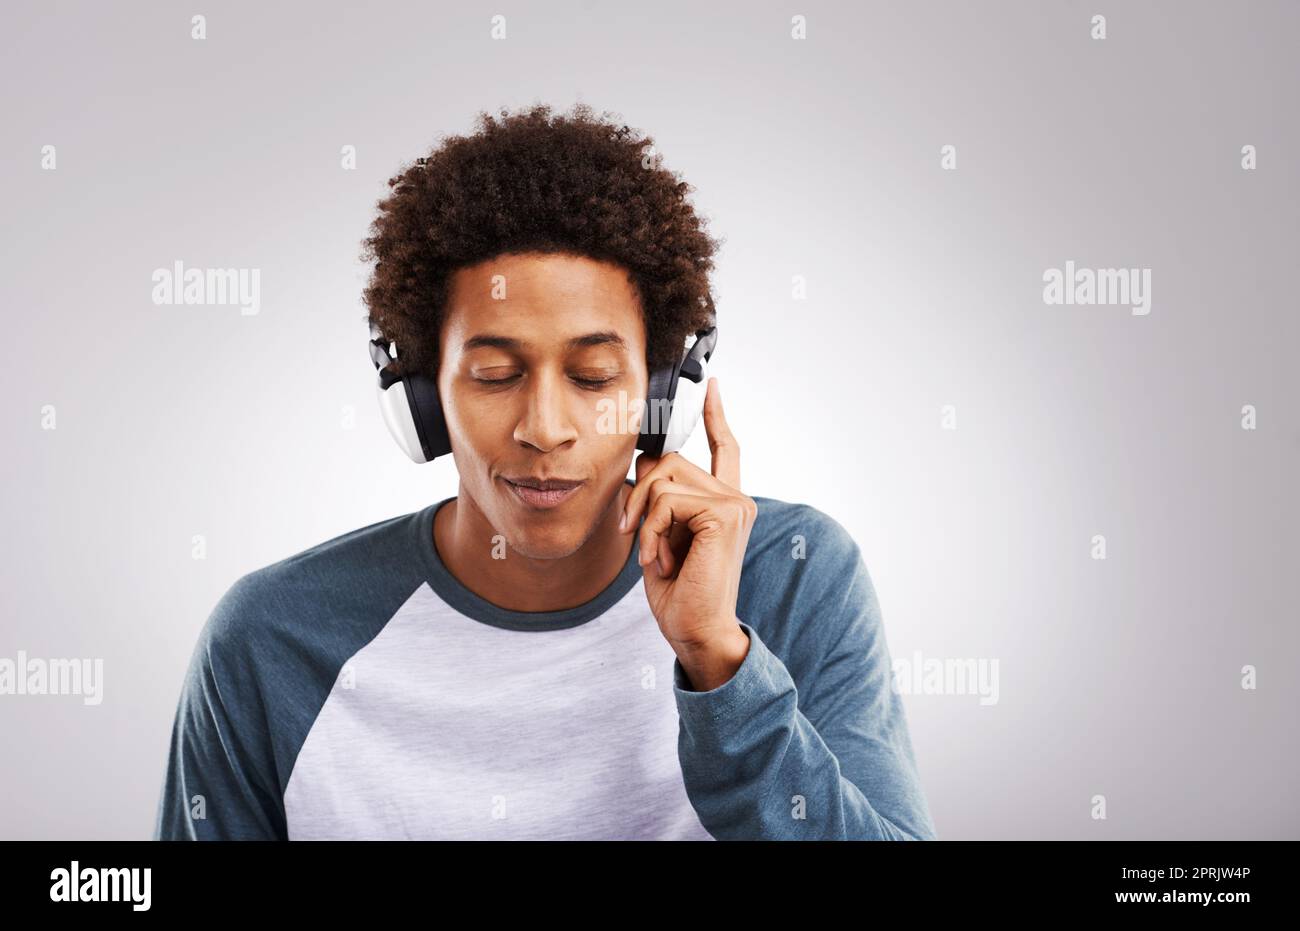 Chiudete gli occhi e lasciate che la musica vi liberi. Studio di un giovane uomo che ascolta musica sulle sue cuffie su uno sfondo grigio. Foto Stock